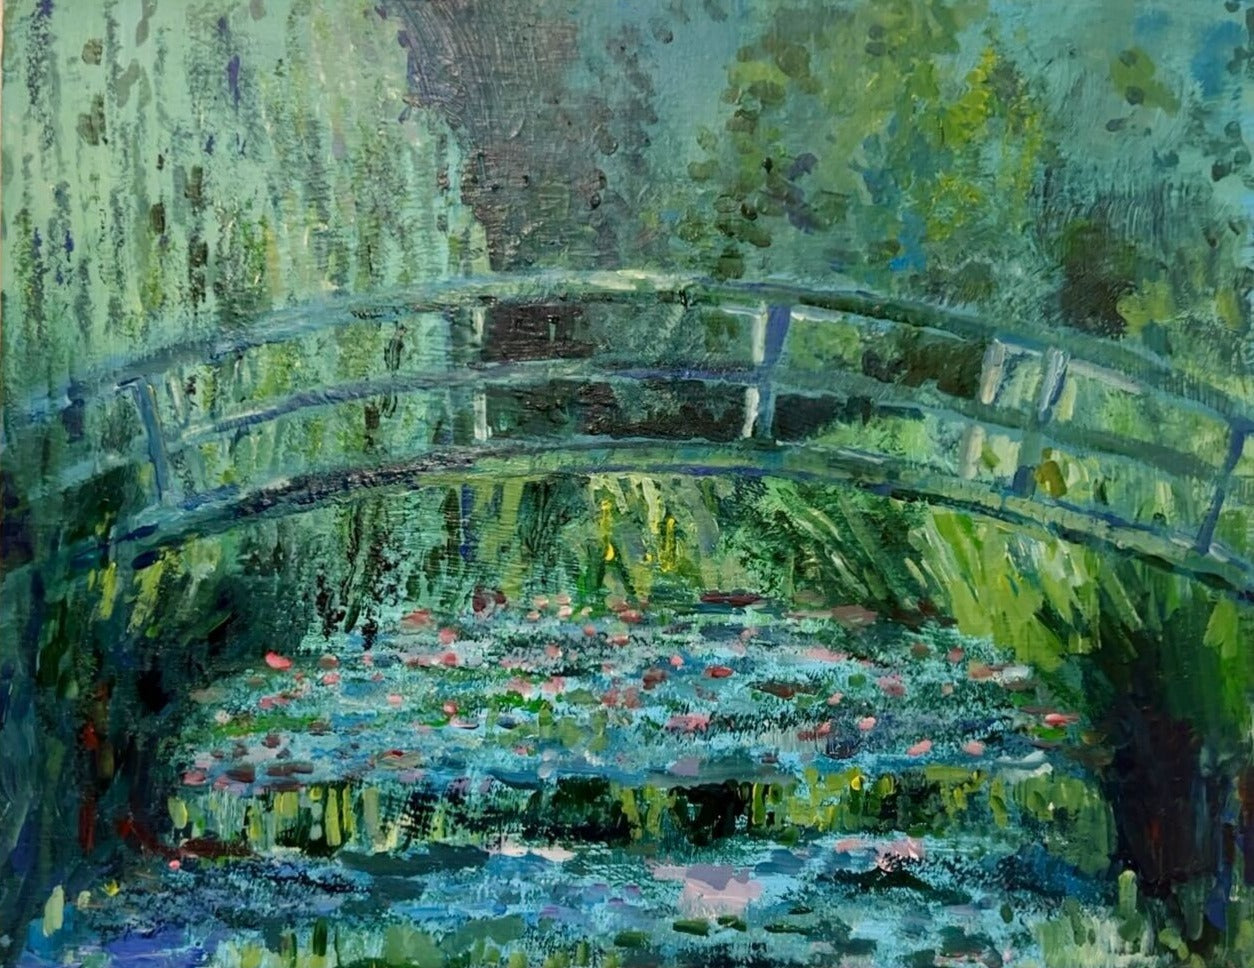 【日本橋】3月16日 (土) 10:00-13:00 | クロード・モネ | ジヴェルニーの日本の橋と睡蓮の池 (The Japanese Footbridge and the Water Lily Pool by Claude Monet at Nihon-bashi)